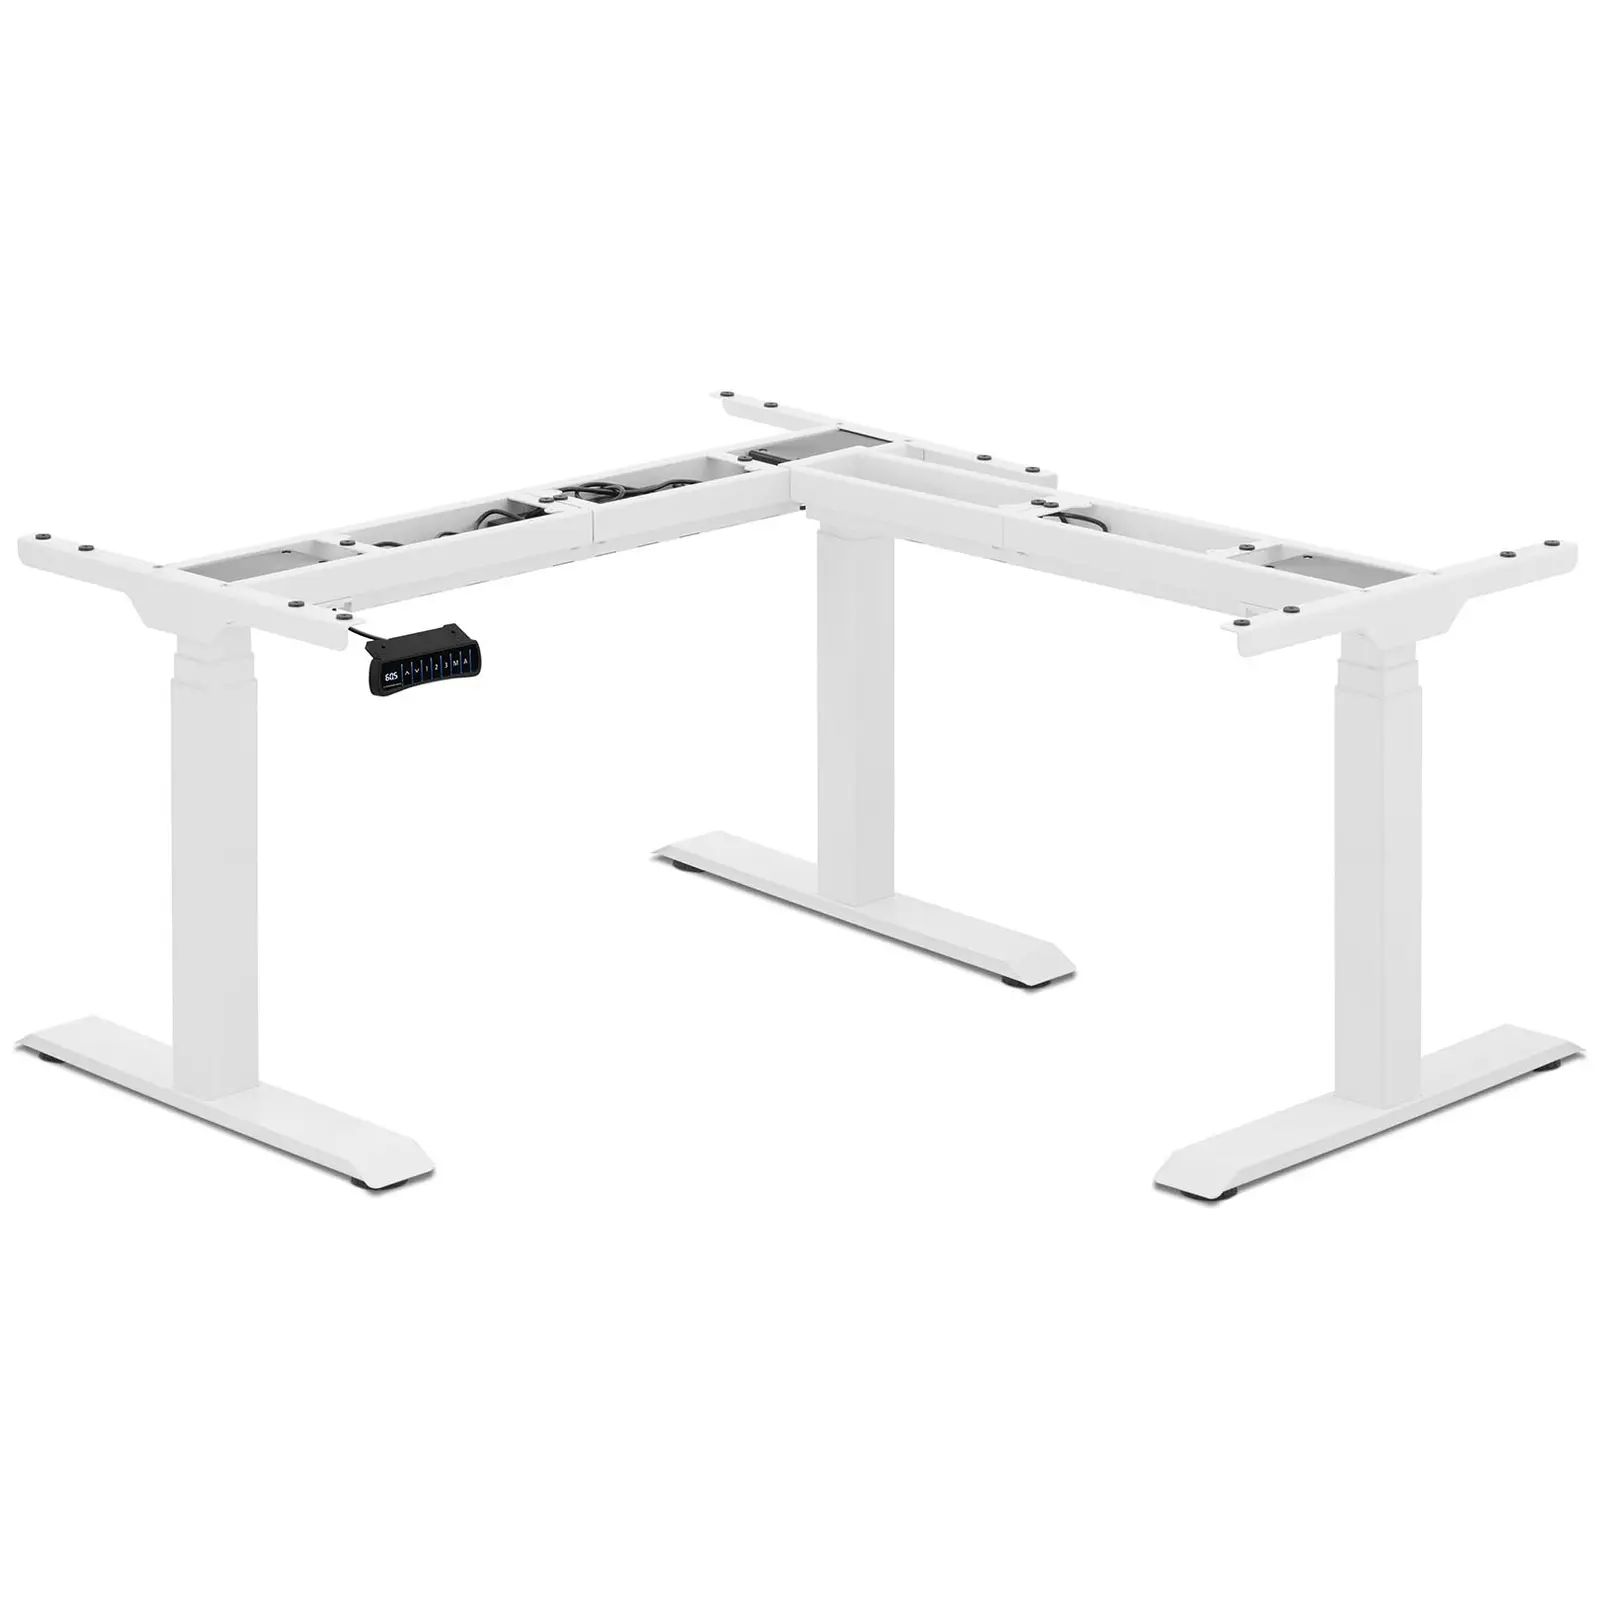 Korkeussäädettävä työpöydän runko - korkeus: 58 - 123 cm - leveys: 90 - 150 / 110 - 190 cm